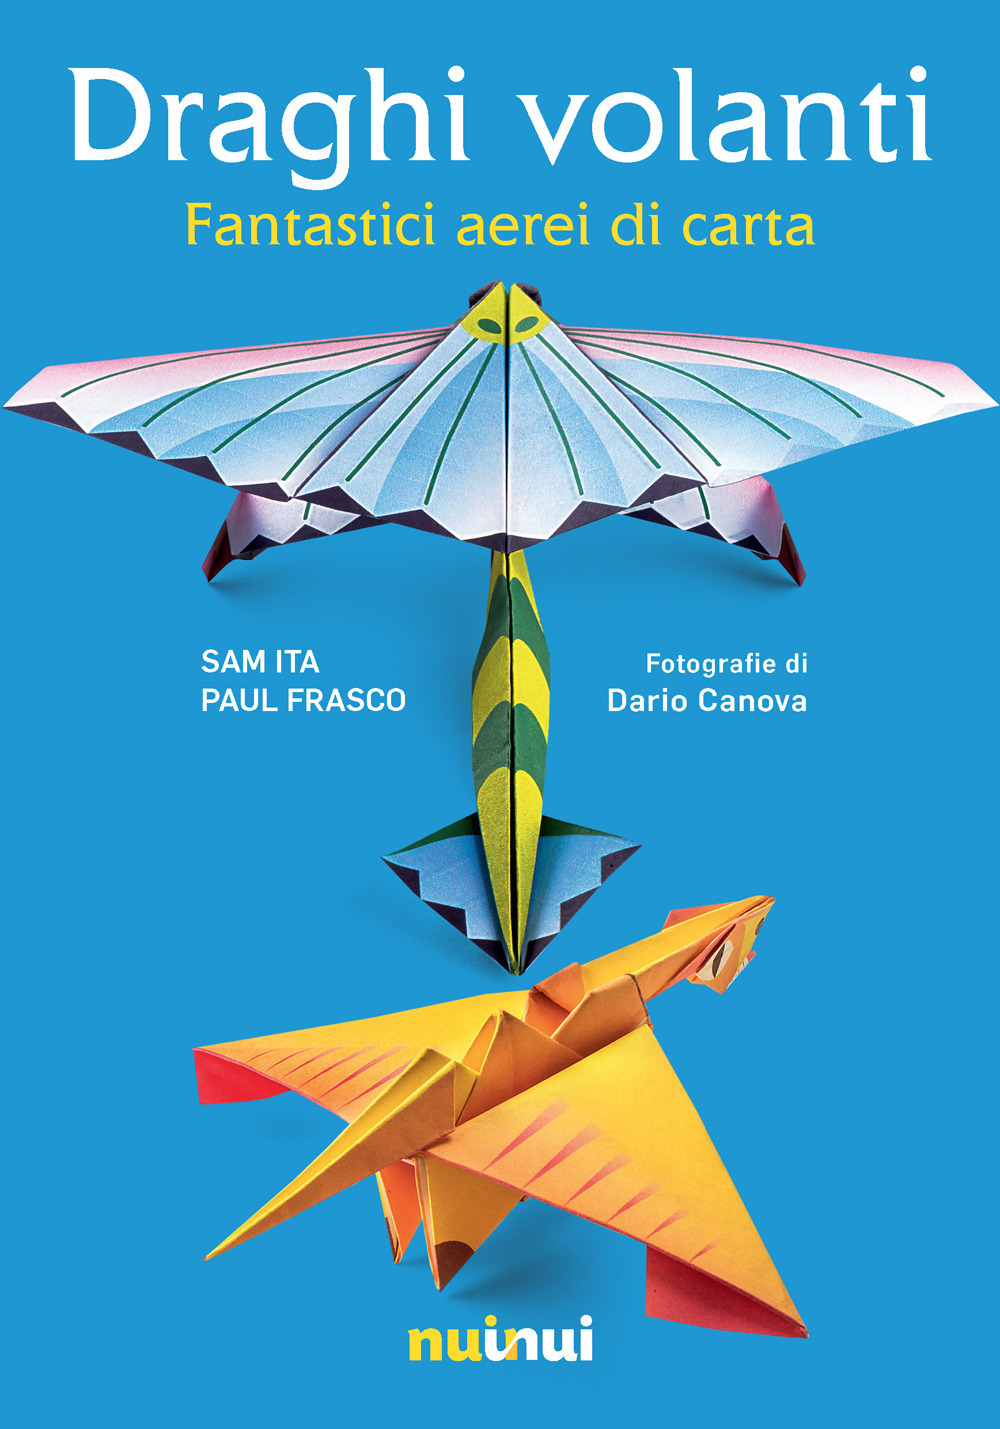 Copertina libro Draghi volanti, fantastici aerei di carta